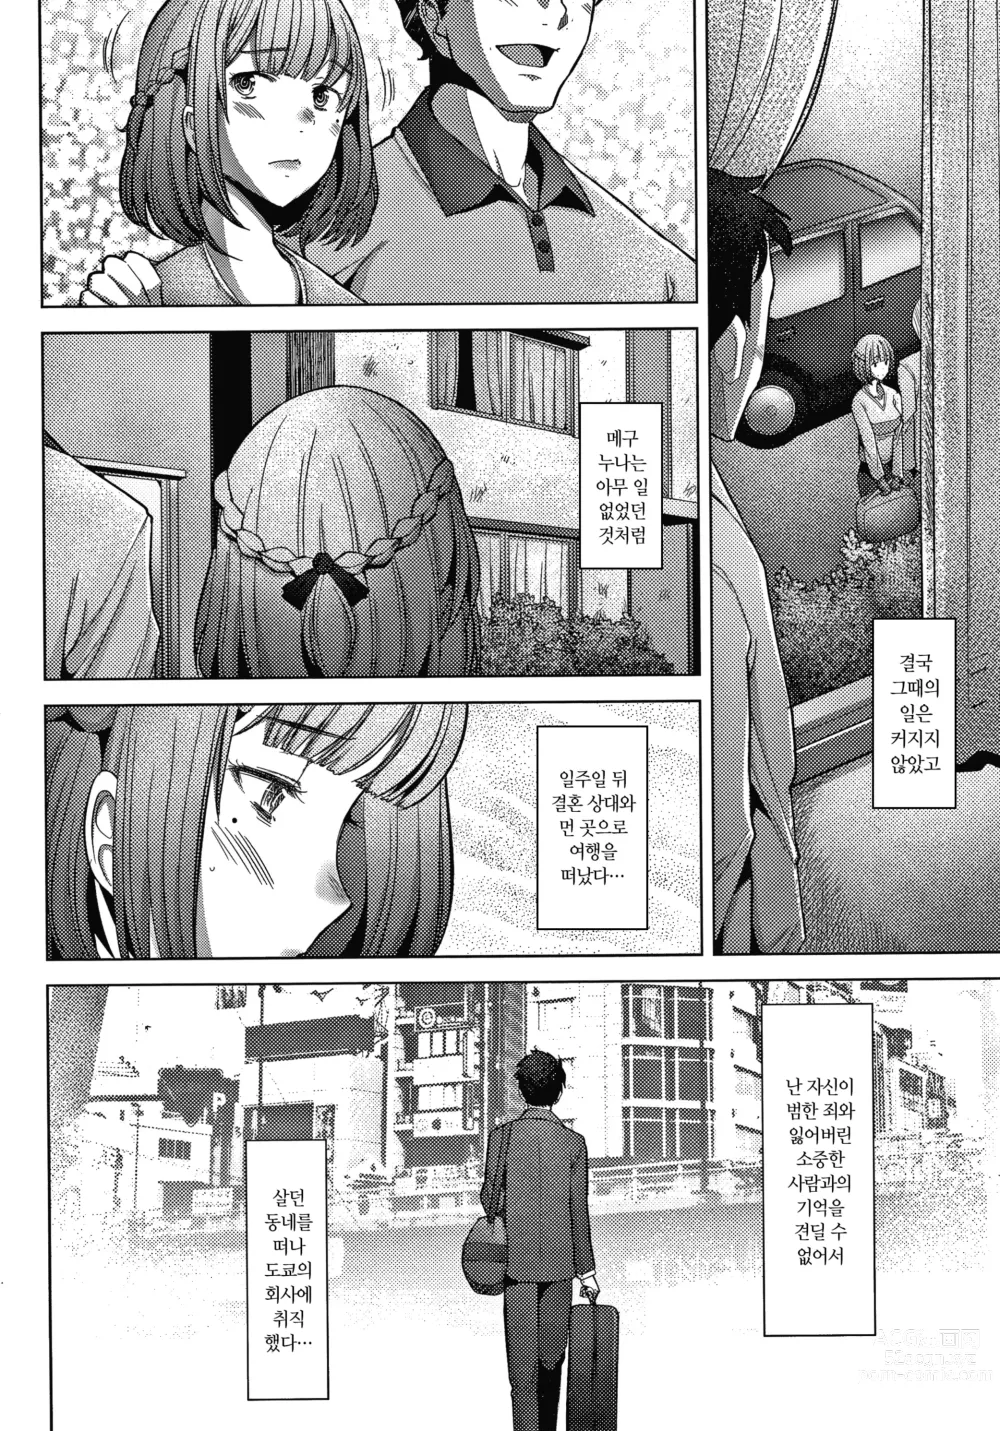 Page 16 of manga 유부녀도 사랑하고 싶어 ~노콘 수정으로 임신하고 싶은 유부녀들~